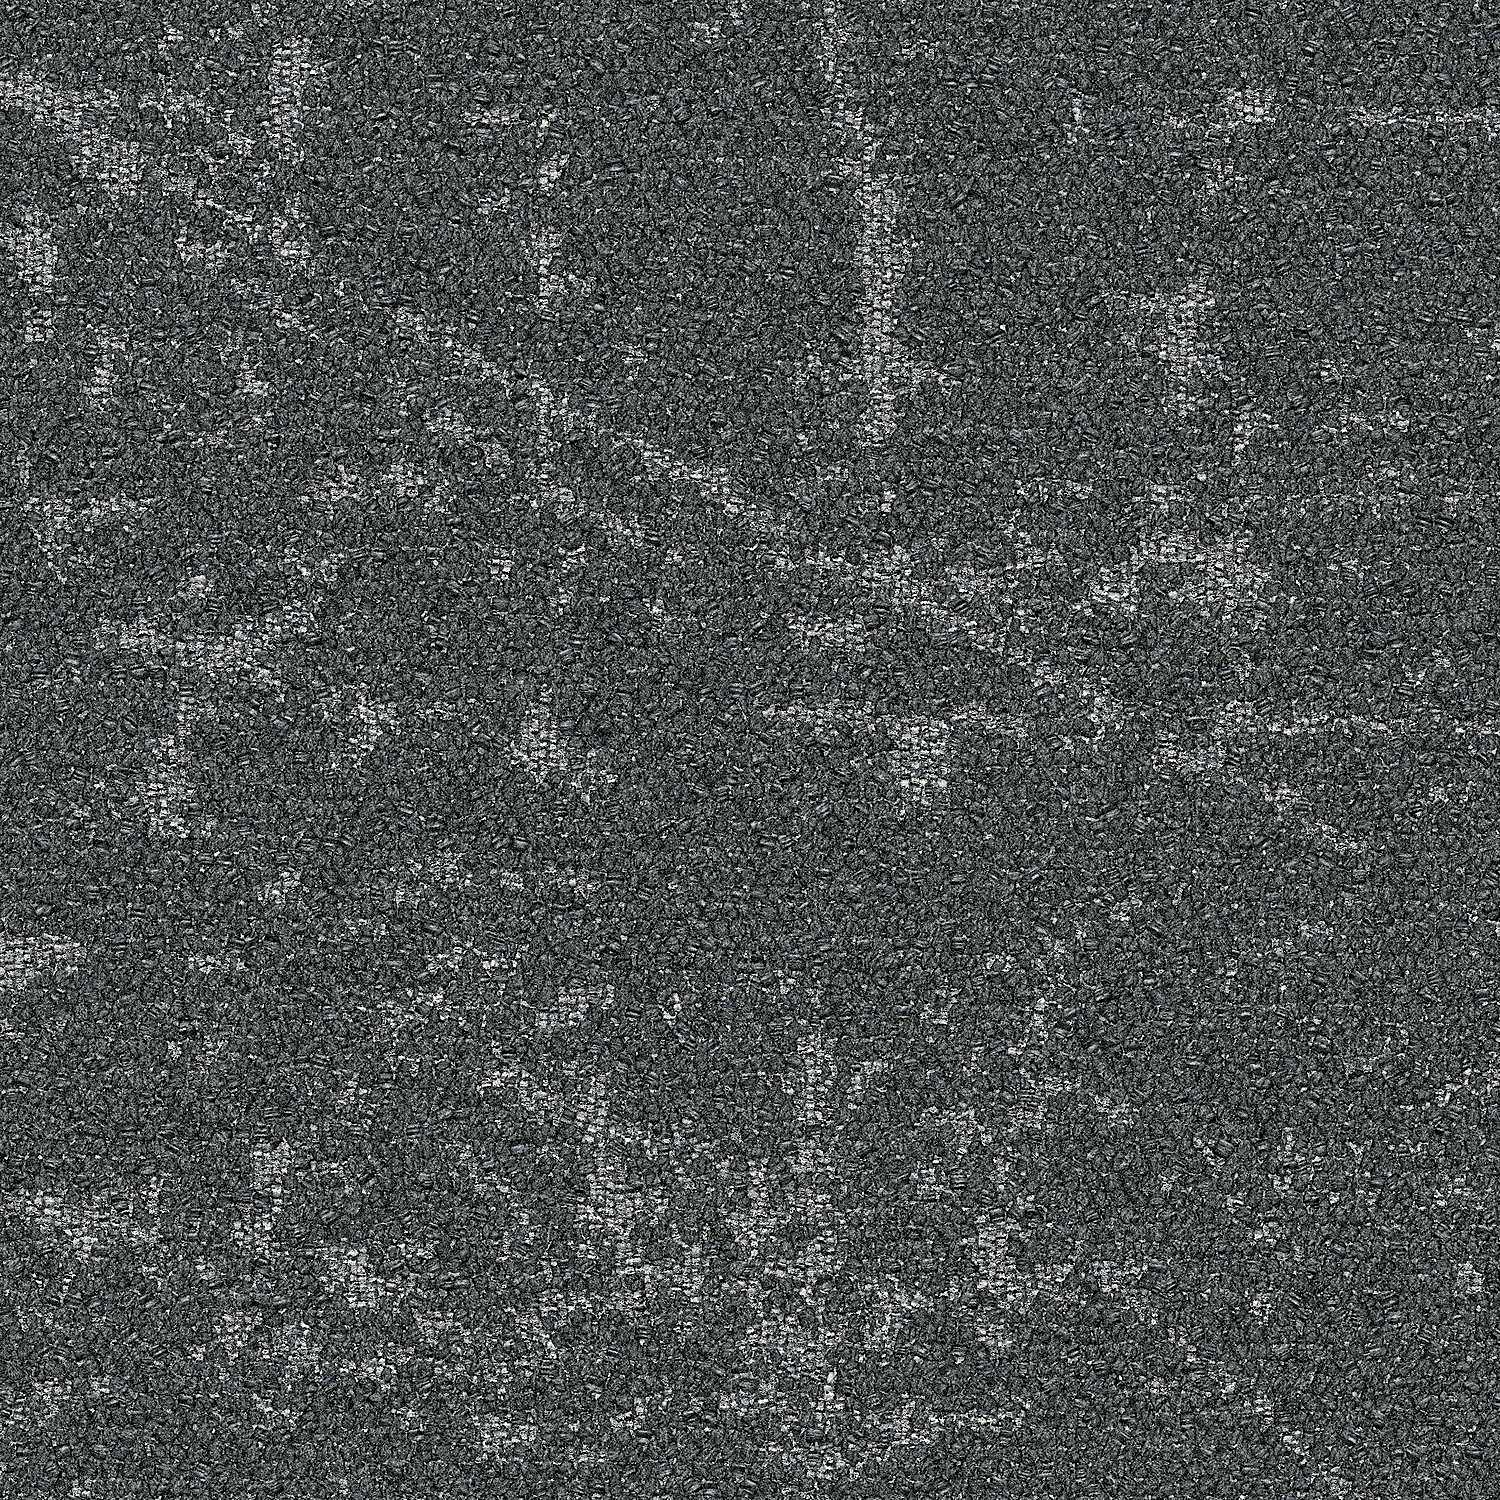 9189-002-000 Granite